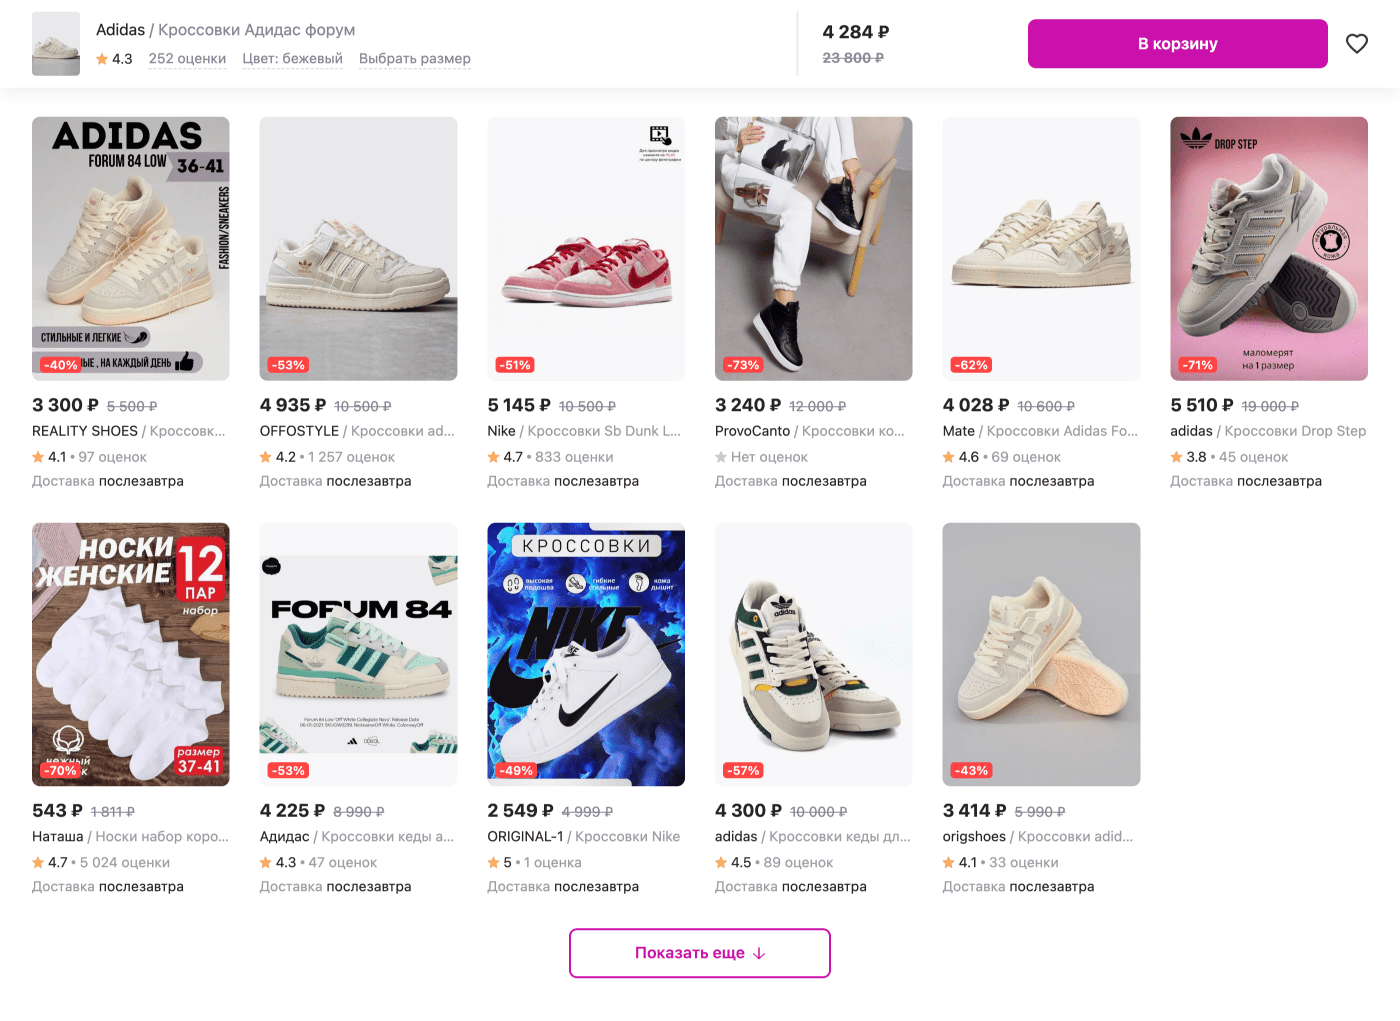 Покупатель смотрит кроссовки Adidas, а маркетплейс предлагает еще посмотреть похожие кроссовки того же бренда или, например, у Nike